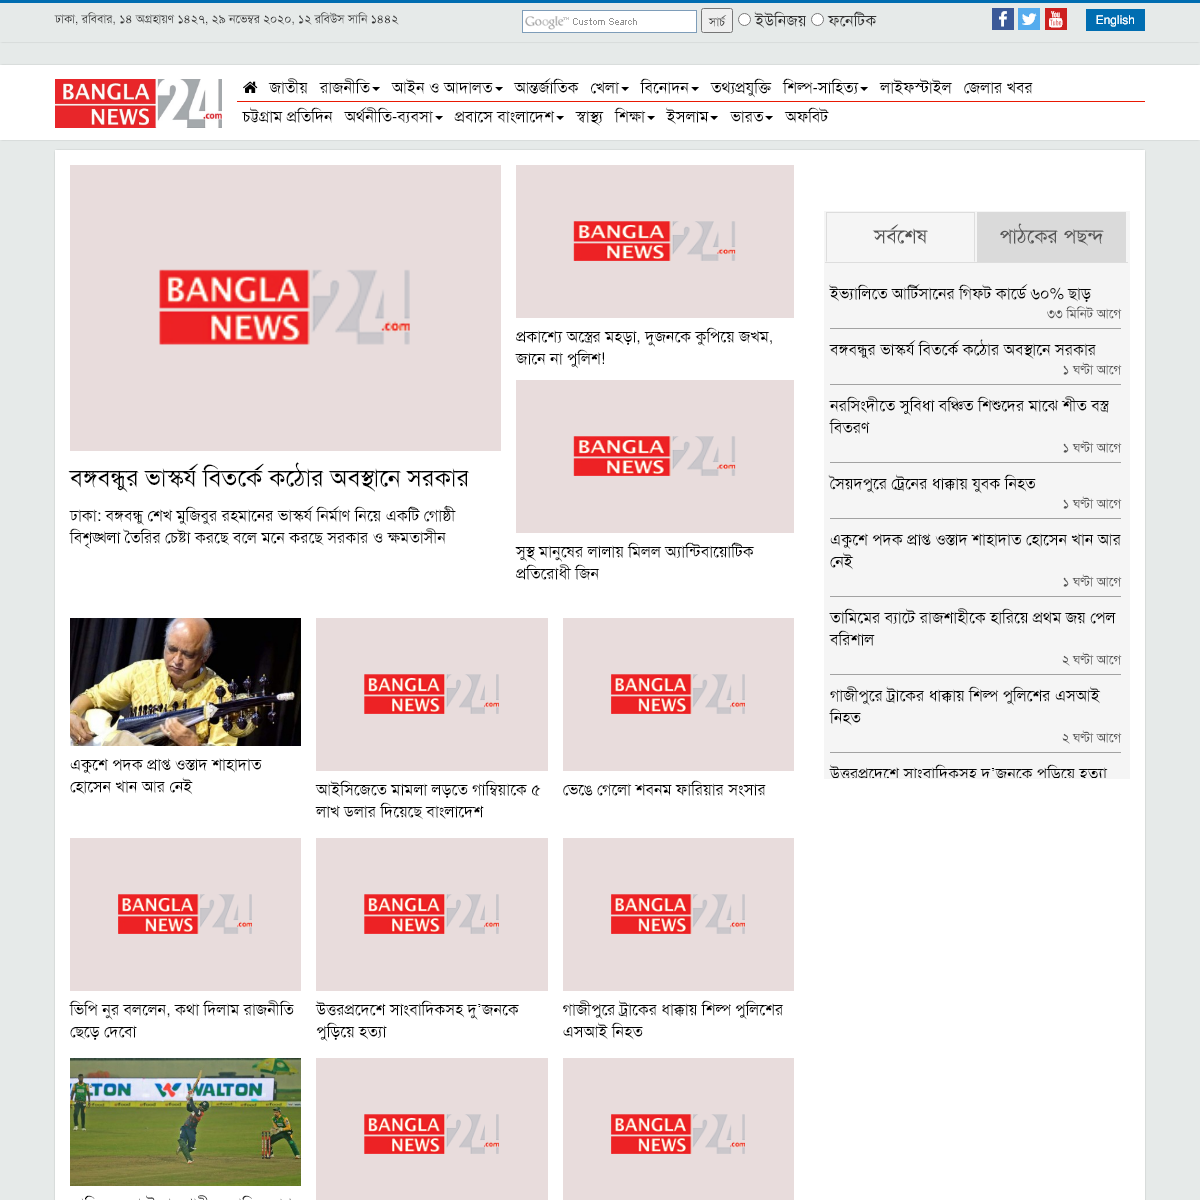 A complete backup of banglanews24.com